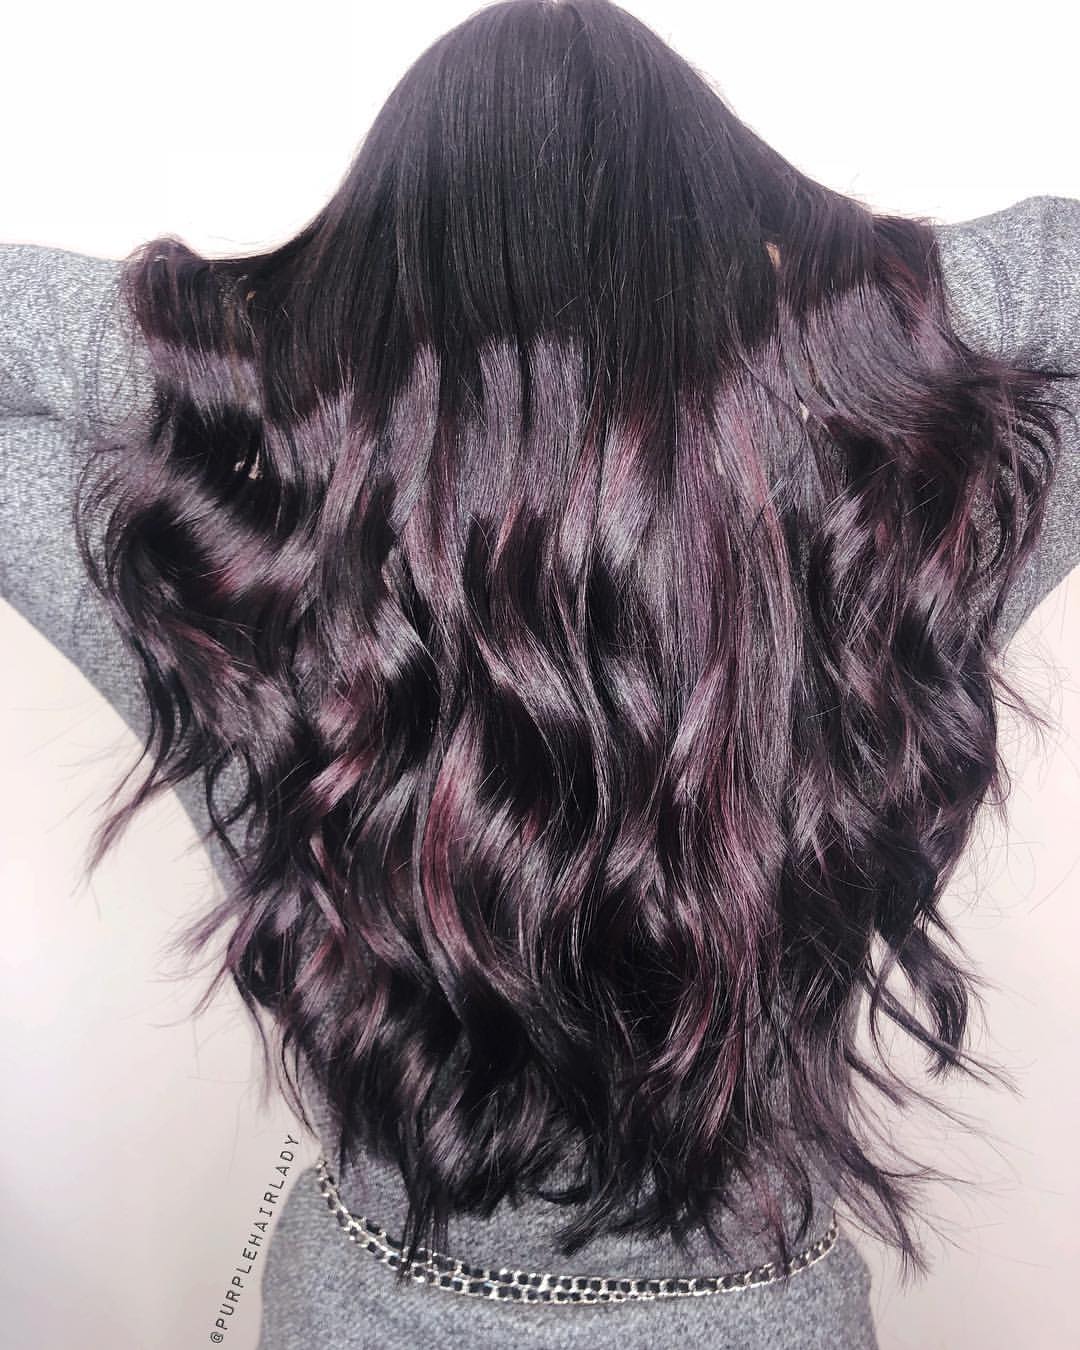 Burgundy hair Color 